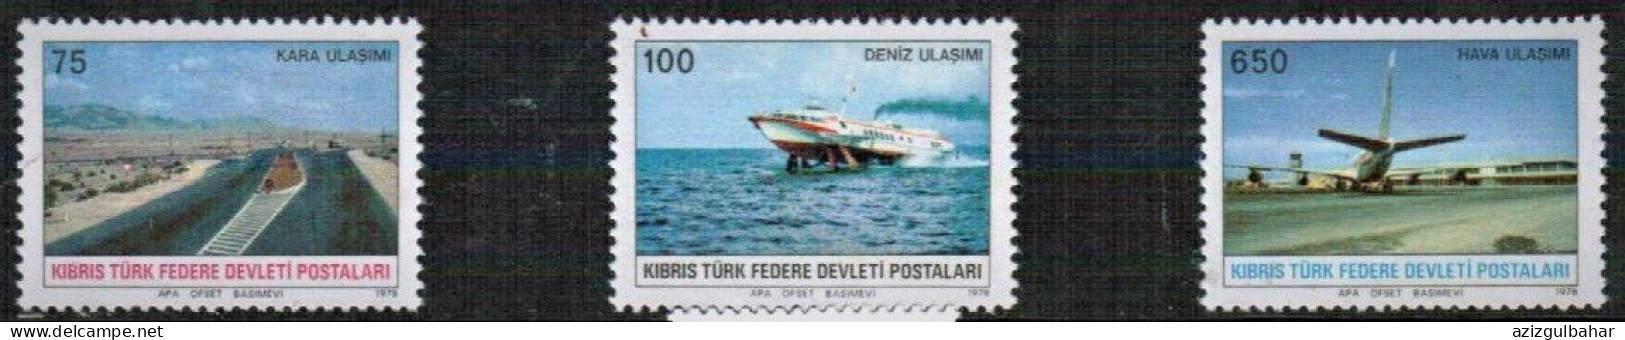 1977 - TRANSPORTATION -  TURKISH CYPRUS STAMPS - STAMPS - - Sonstige (See)